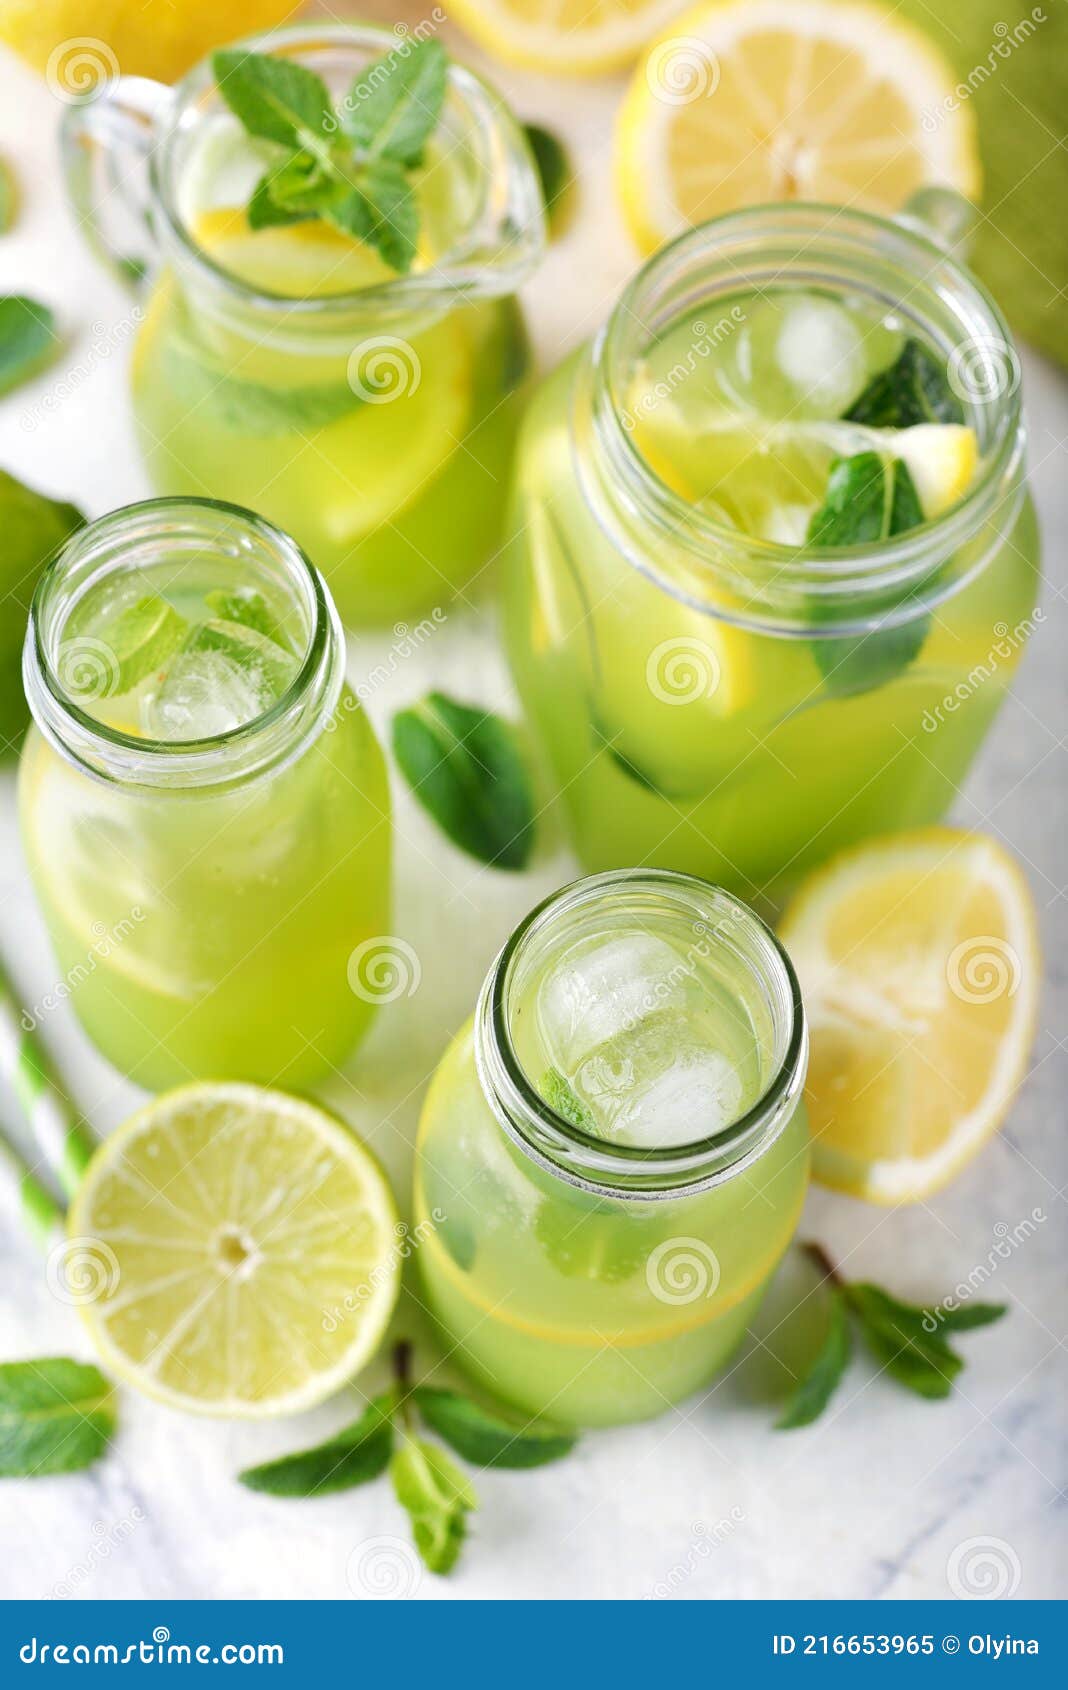 薄荷香茅柠檬水怎么做_薄荷香茅柠檬水的做法_豆果美食